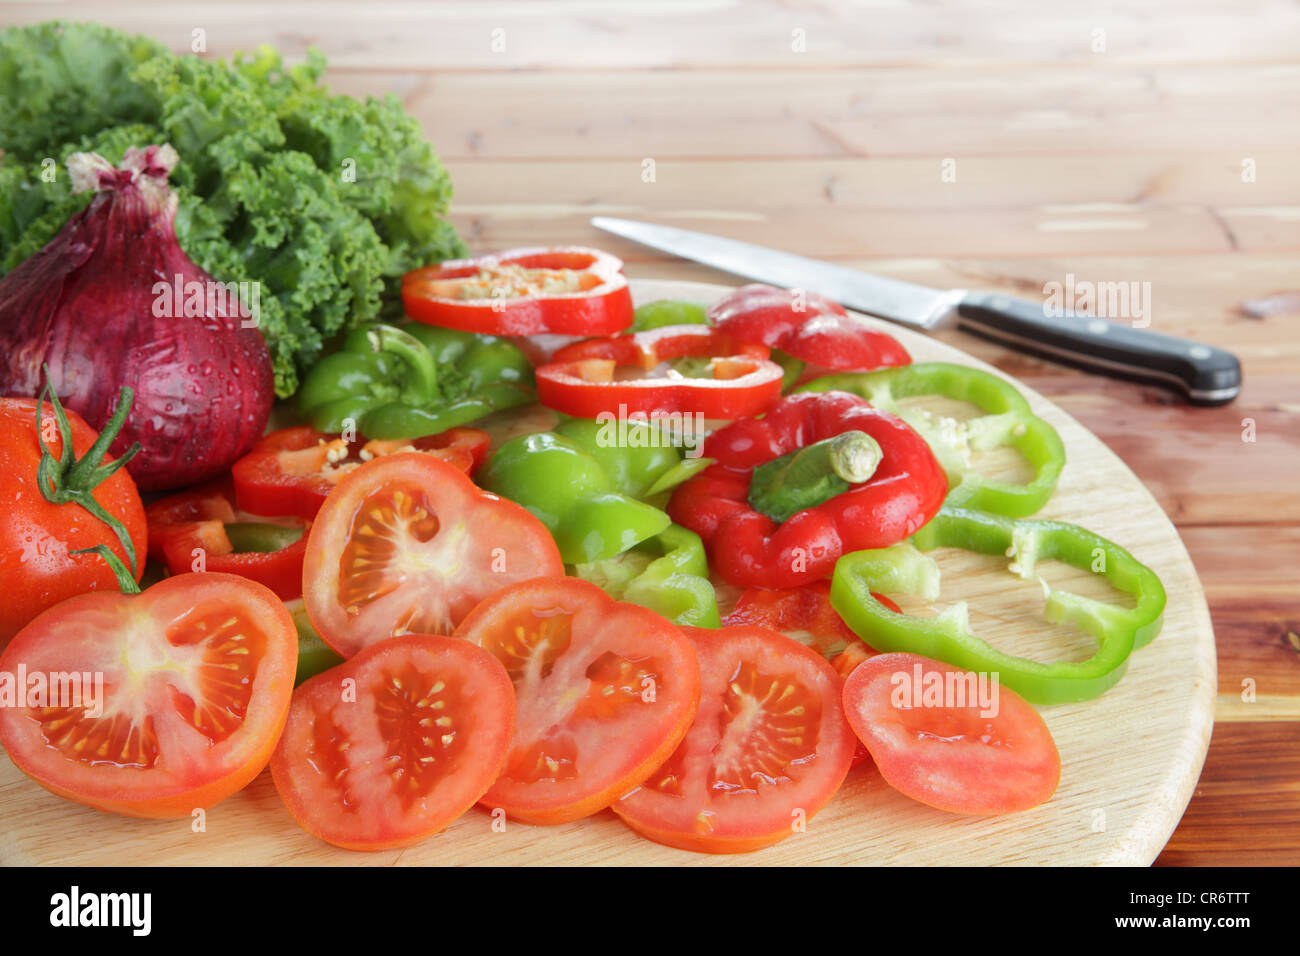 Salatzutaten wie Tomaten, Kohl, Zwiebeln und rote und grüne Paprika Stockfoto